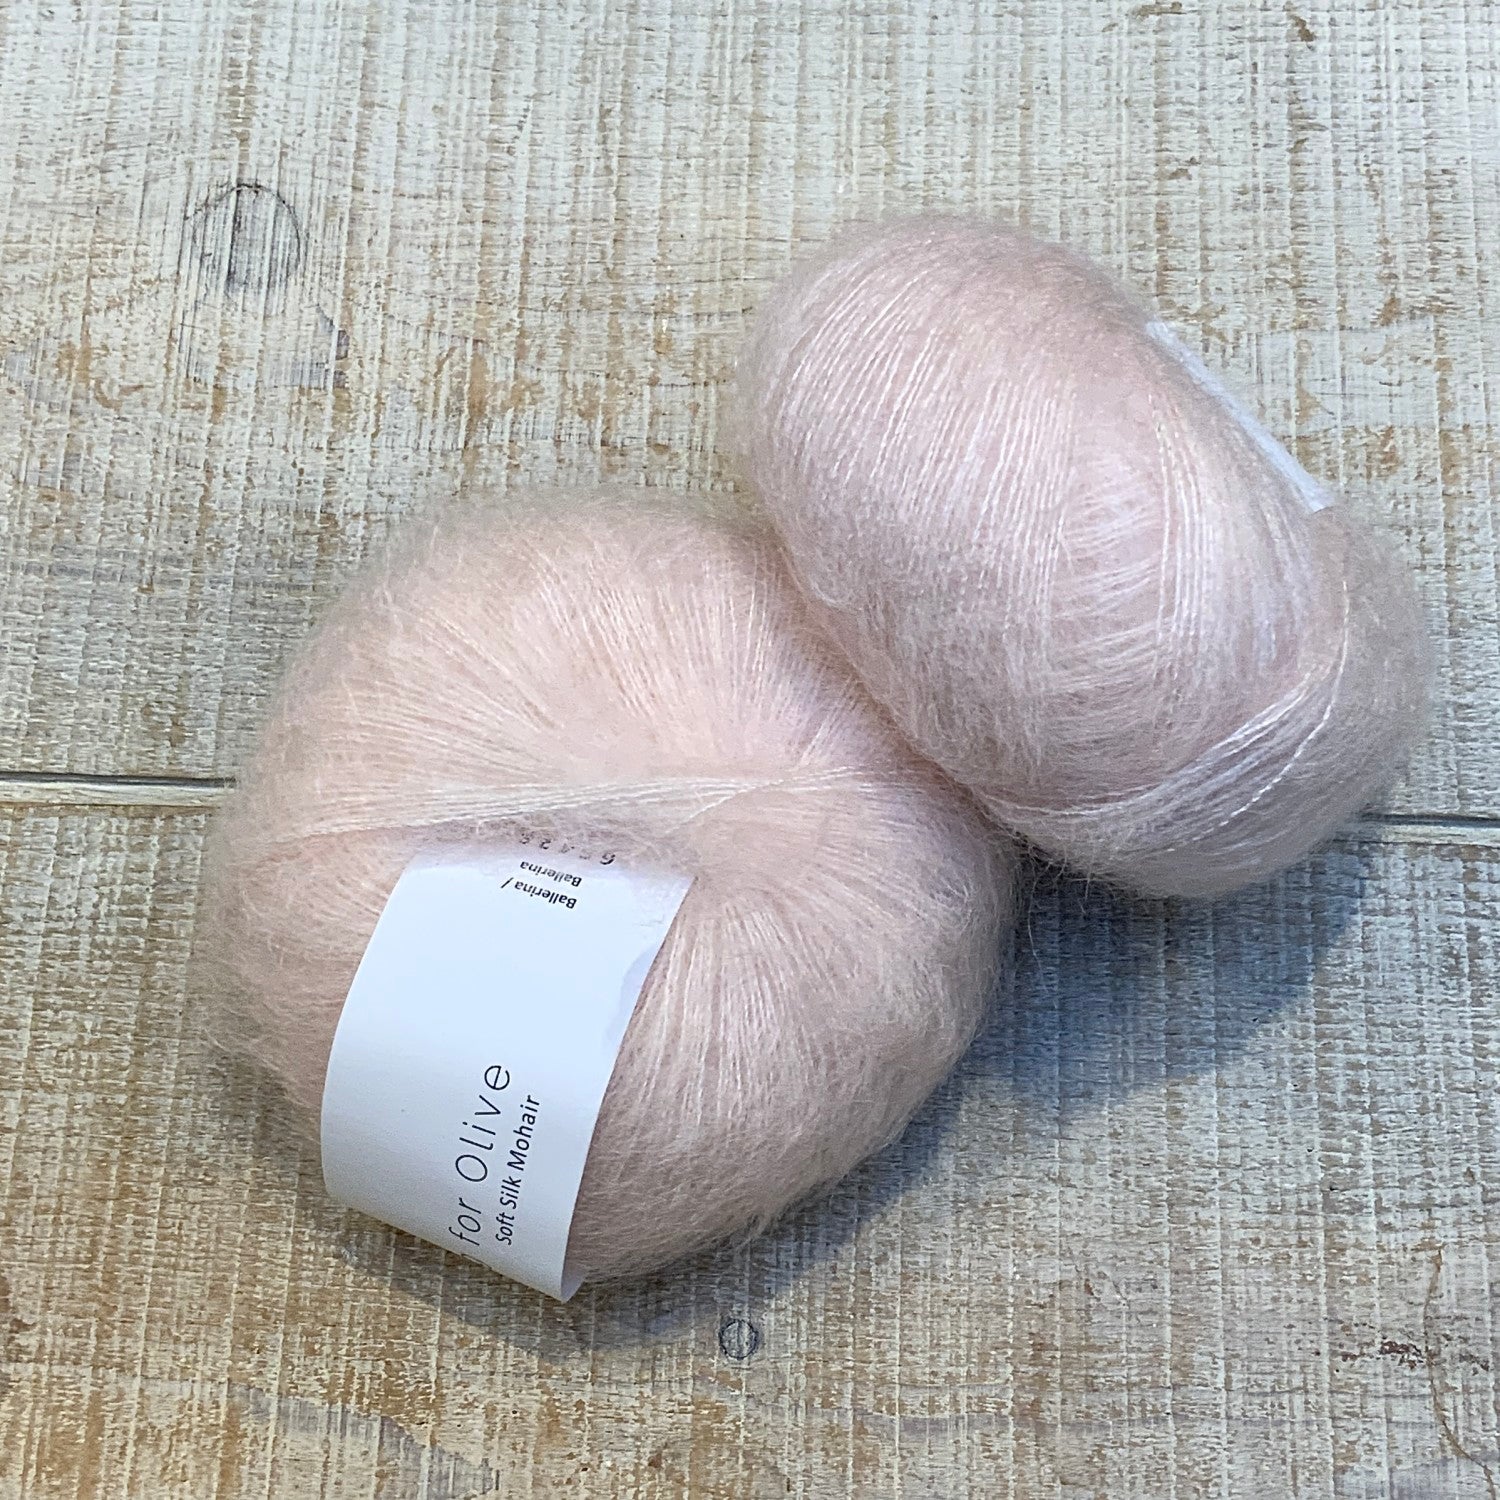 Soft Silk Mohair - Knitting for Olive – La Mercerie